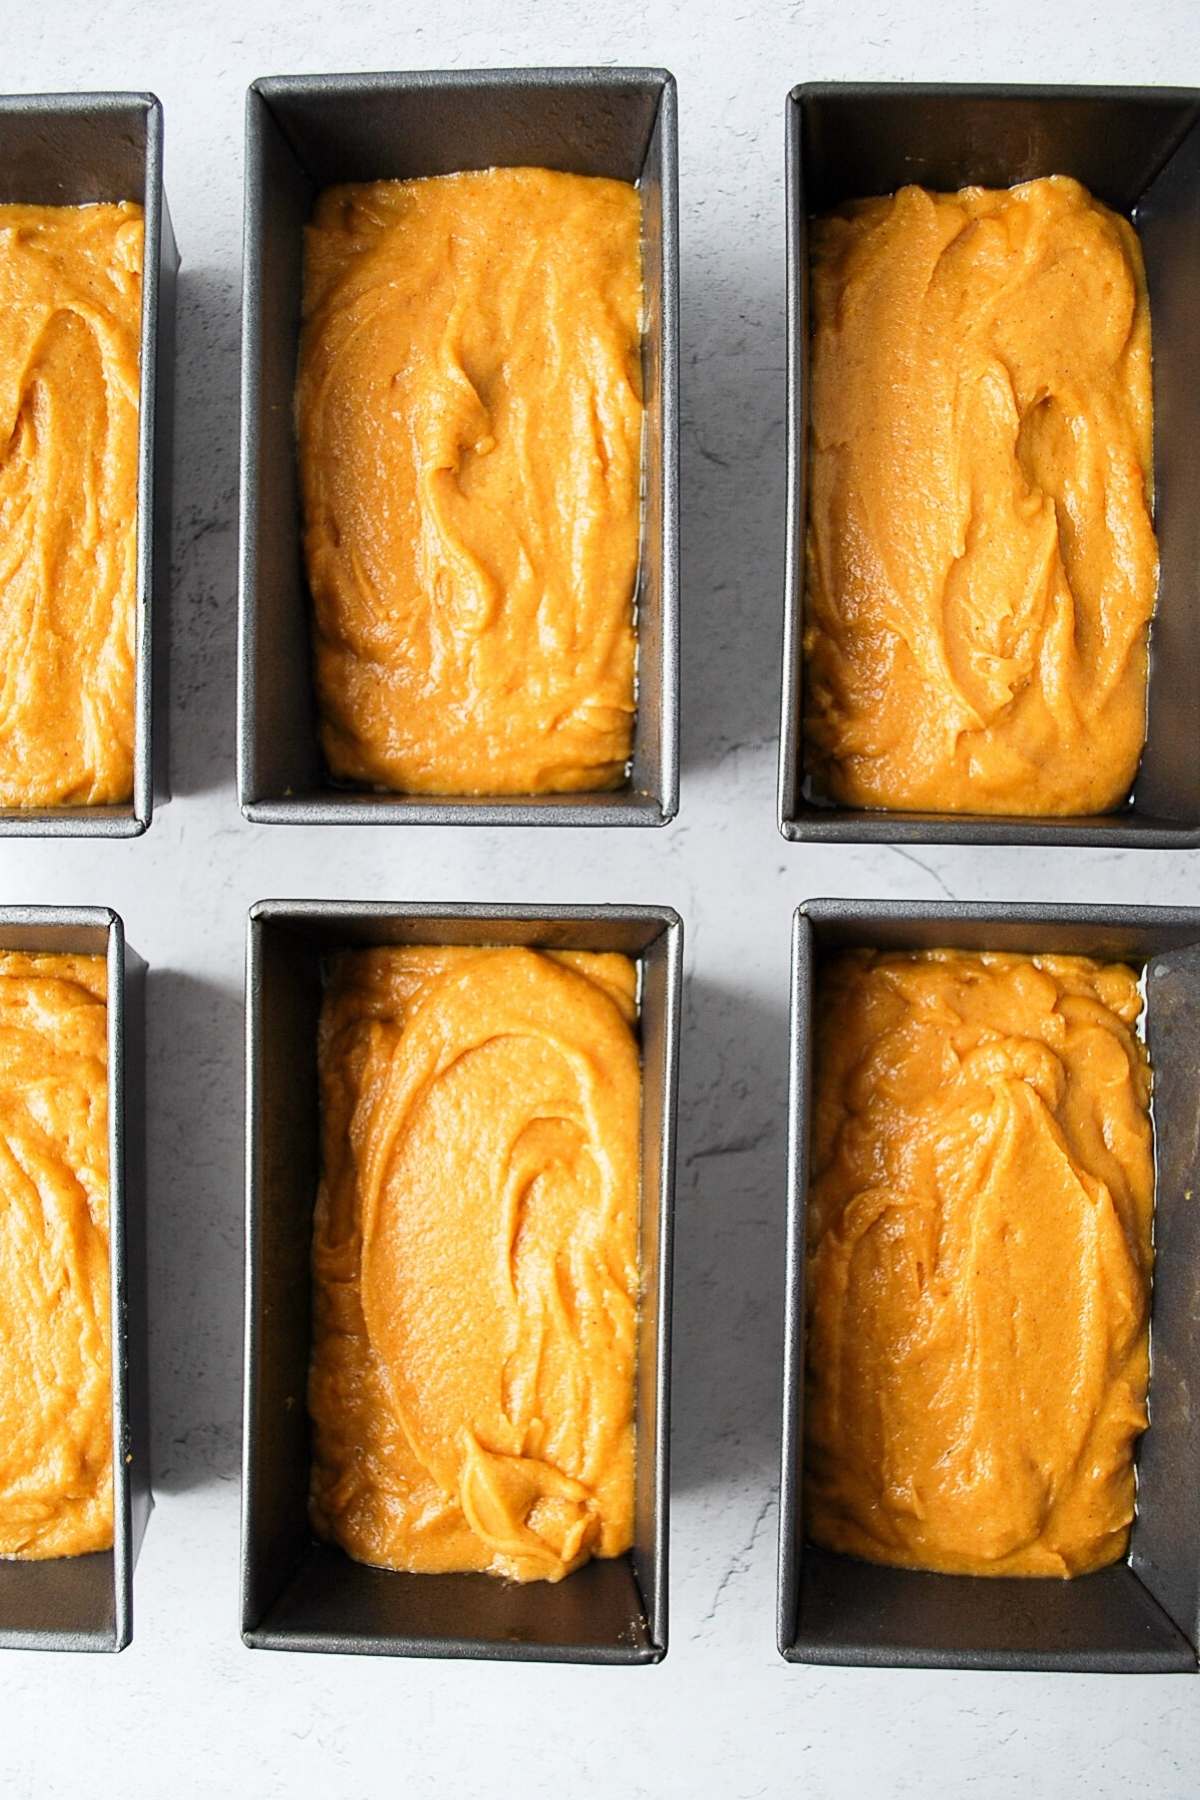 gluten-free pumpkin bread batter in mini loaf pans ready to bake